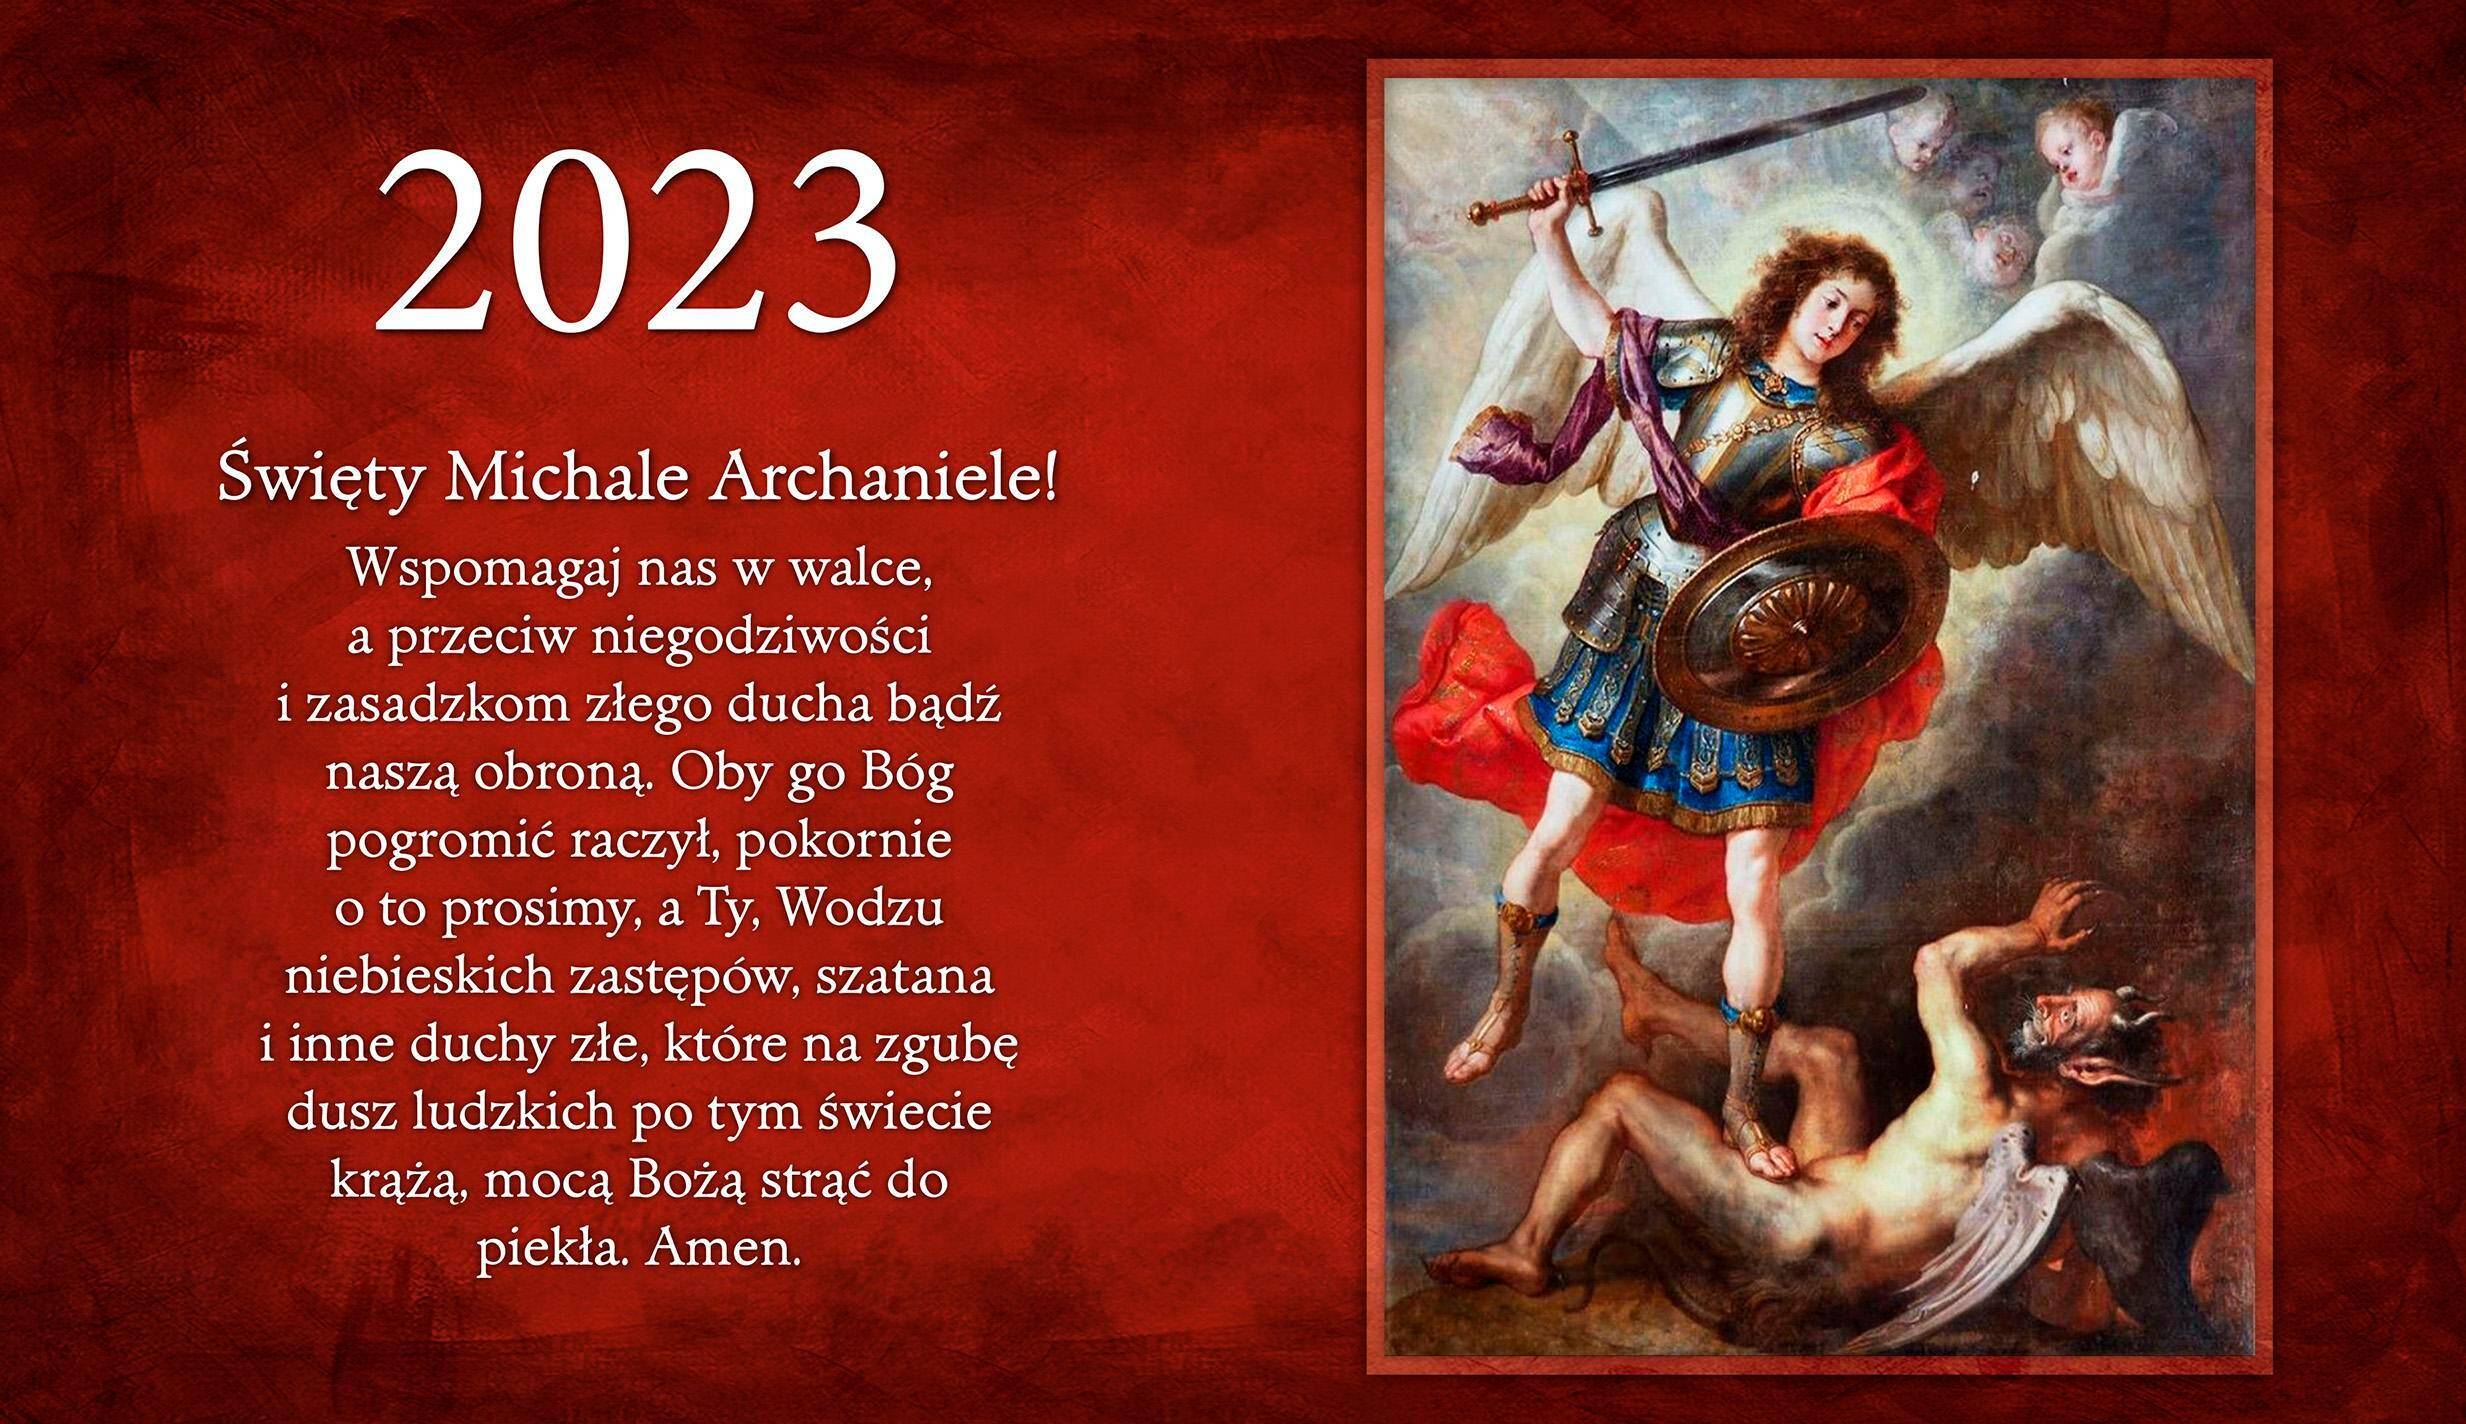 2023 kalendarz trójdzielny - Św. Michał Archanioł